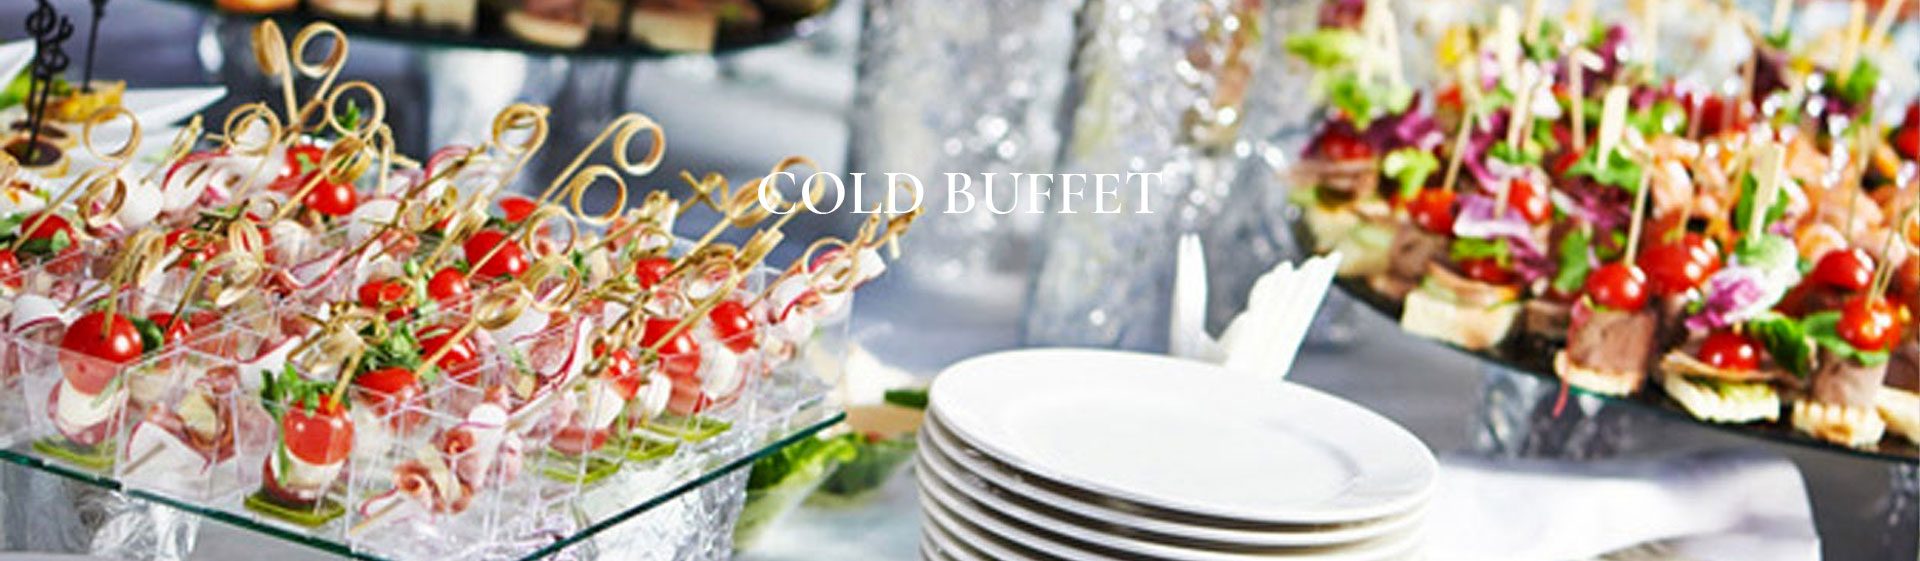 header-cold-buffet